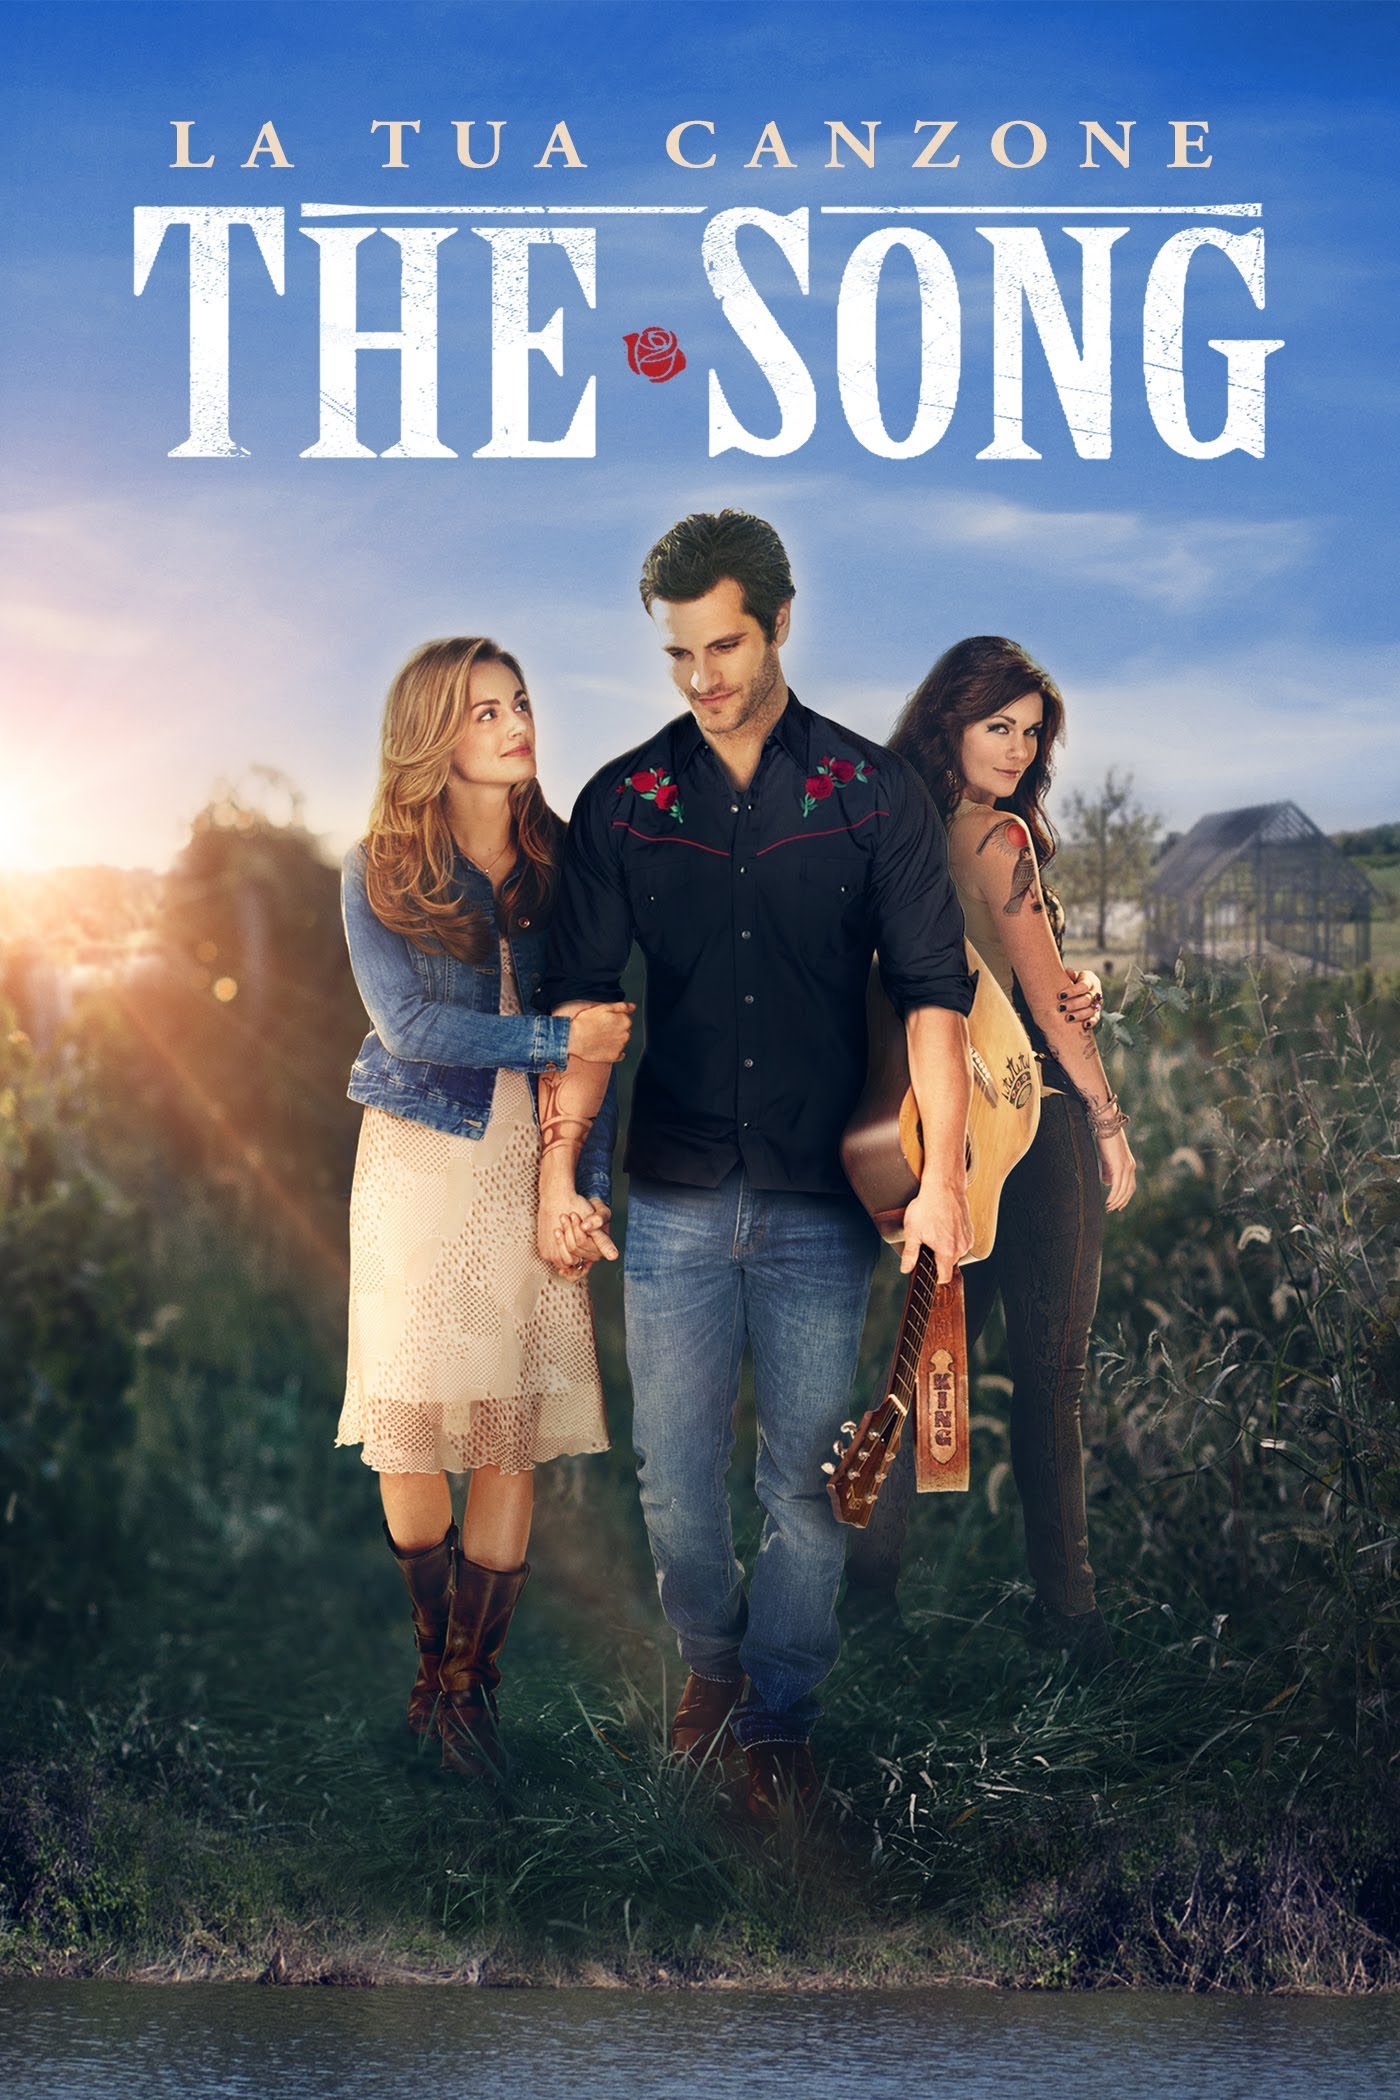 La tua canzone : The song [HD] (2014)